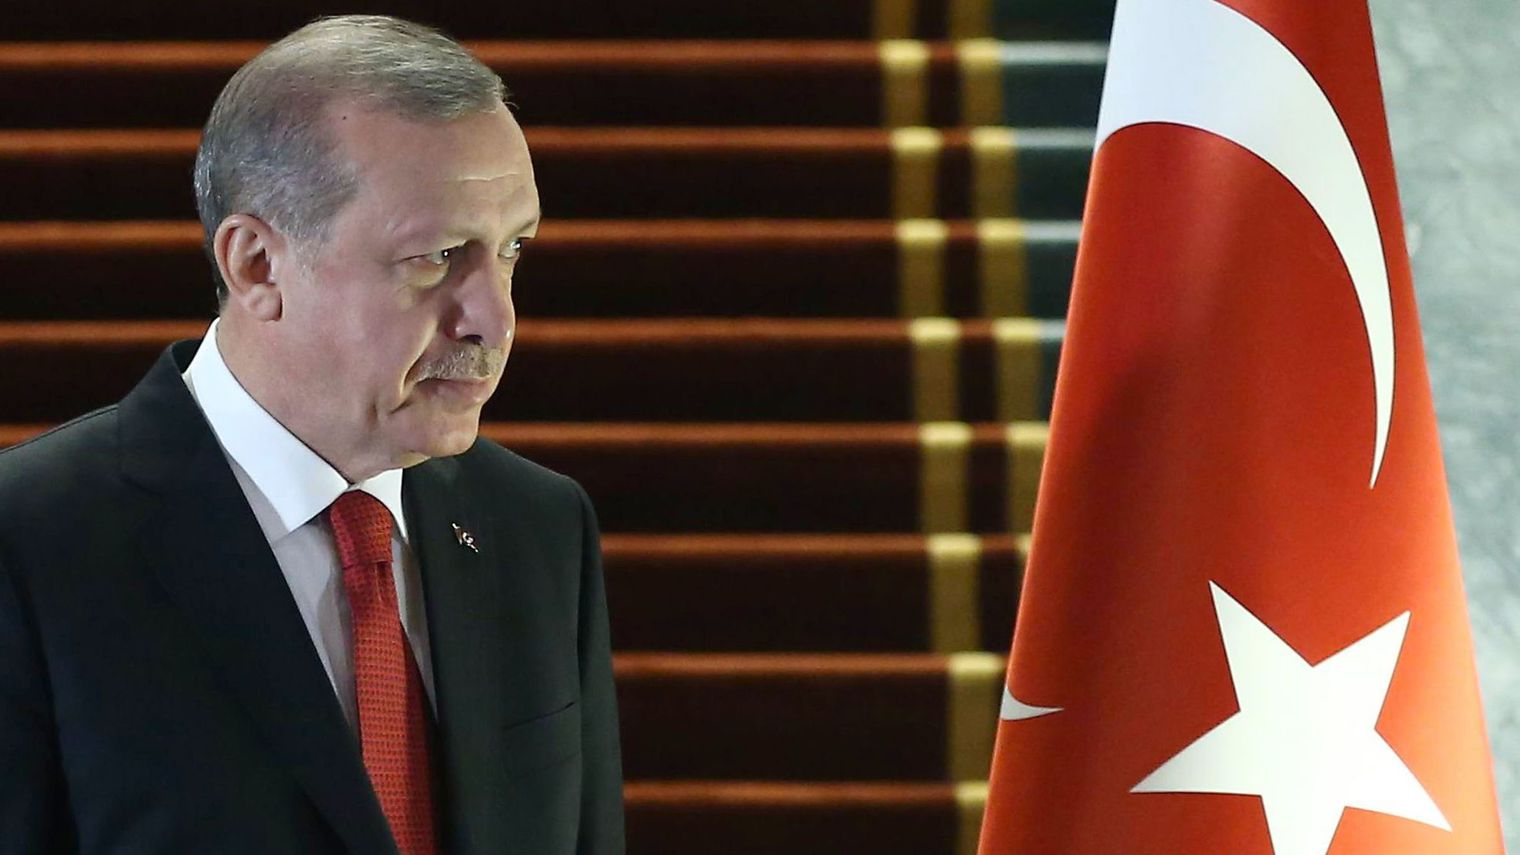 ¿Qué precio pide Erdogan a cambio de cerrar la frontera turca con Siria?
